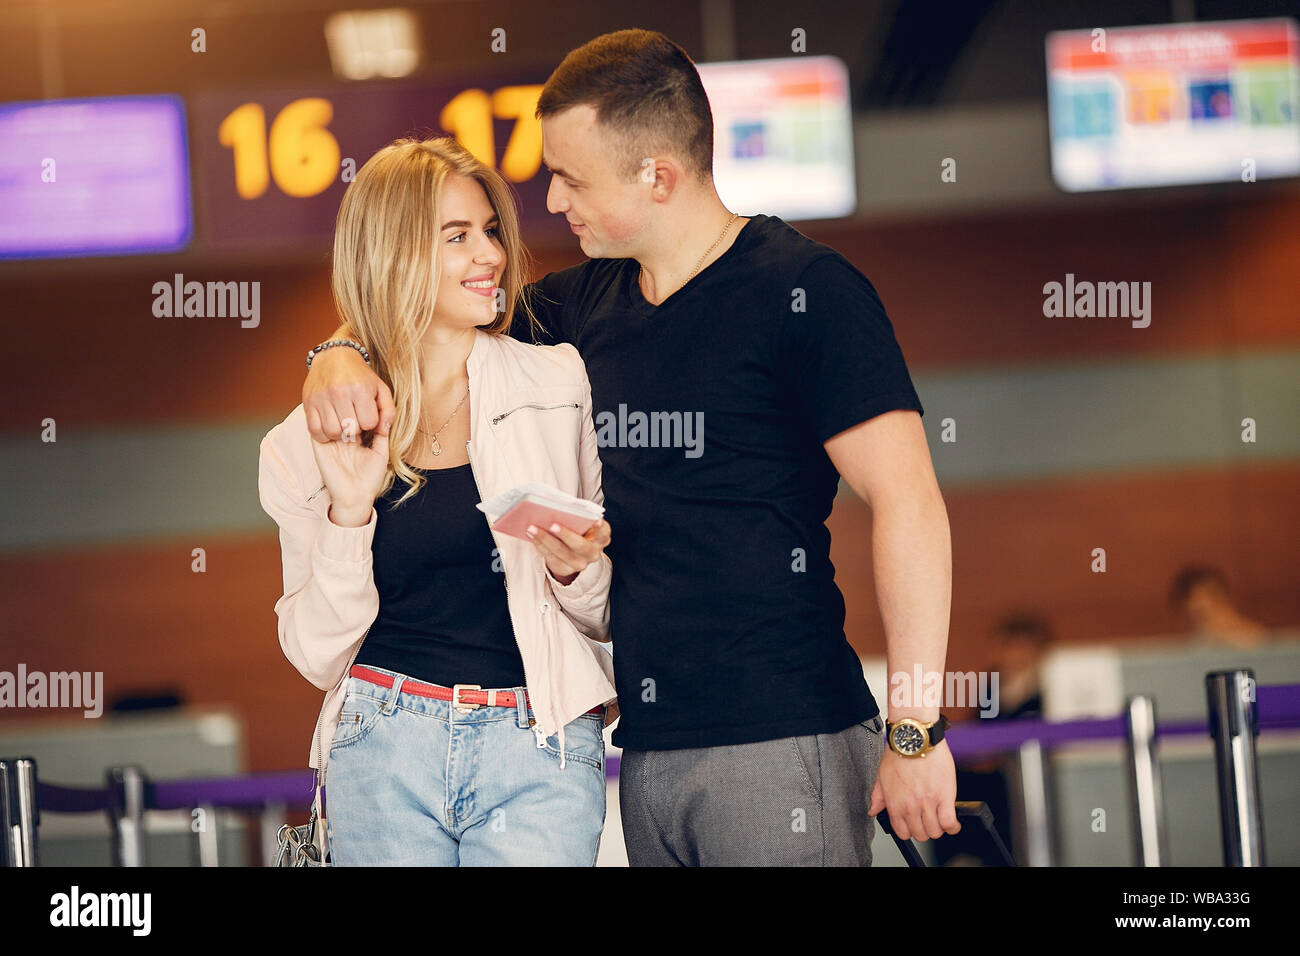 Paar in einem Flughafen. Schöne Blondine in einem weißen Mantel. Mann in einem schwarzen T-Shirt Stockfoto